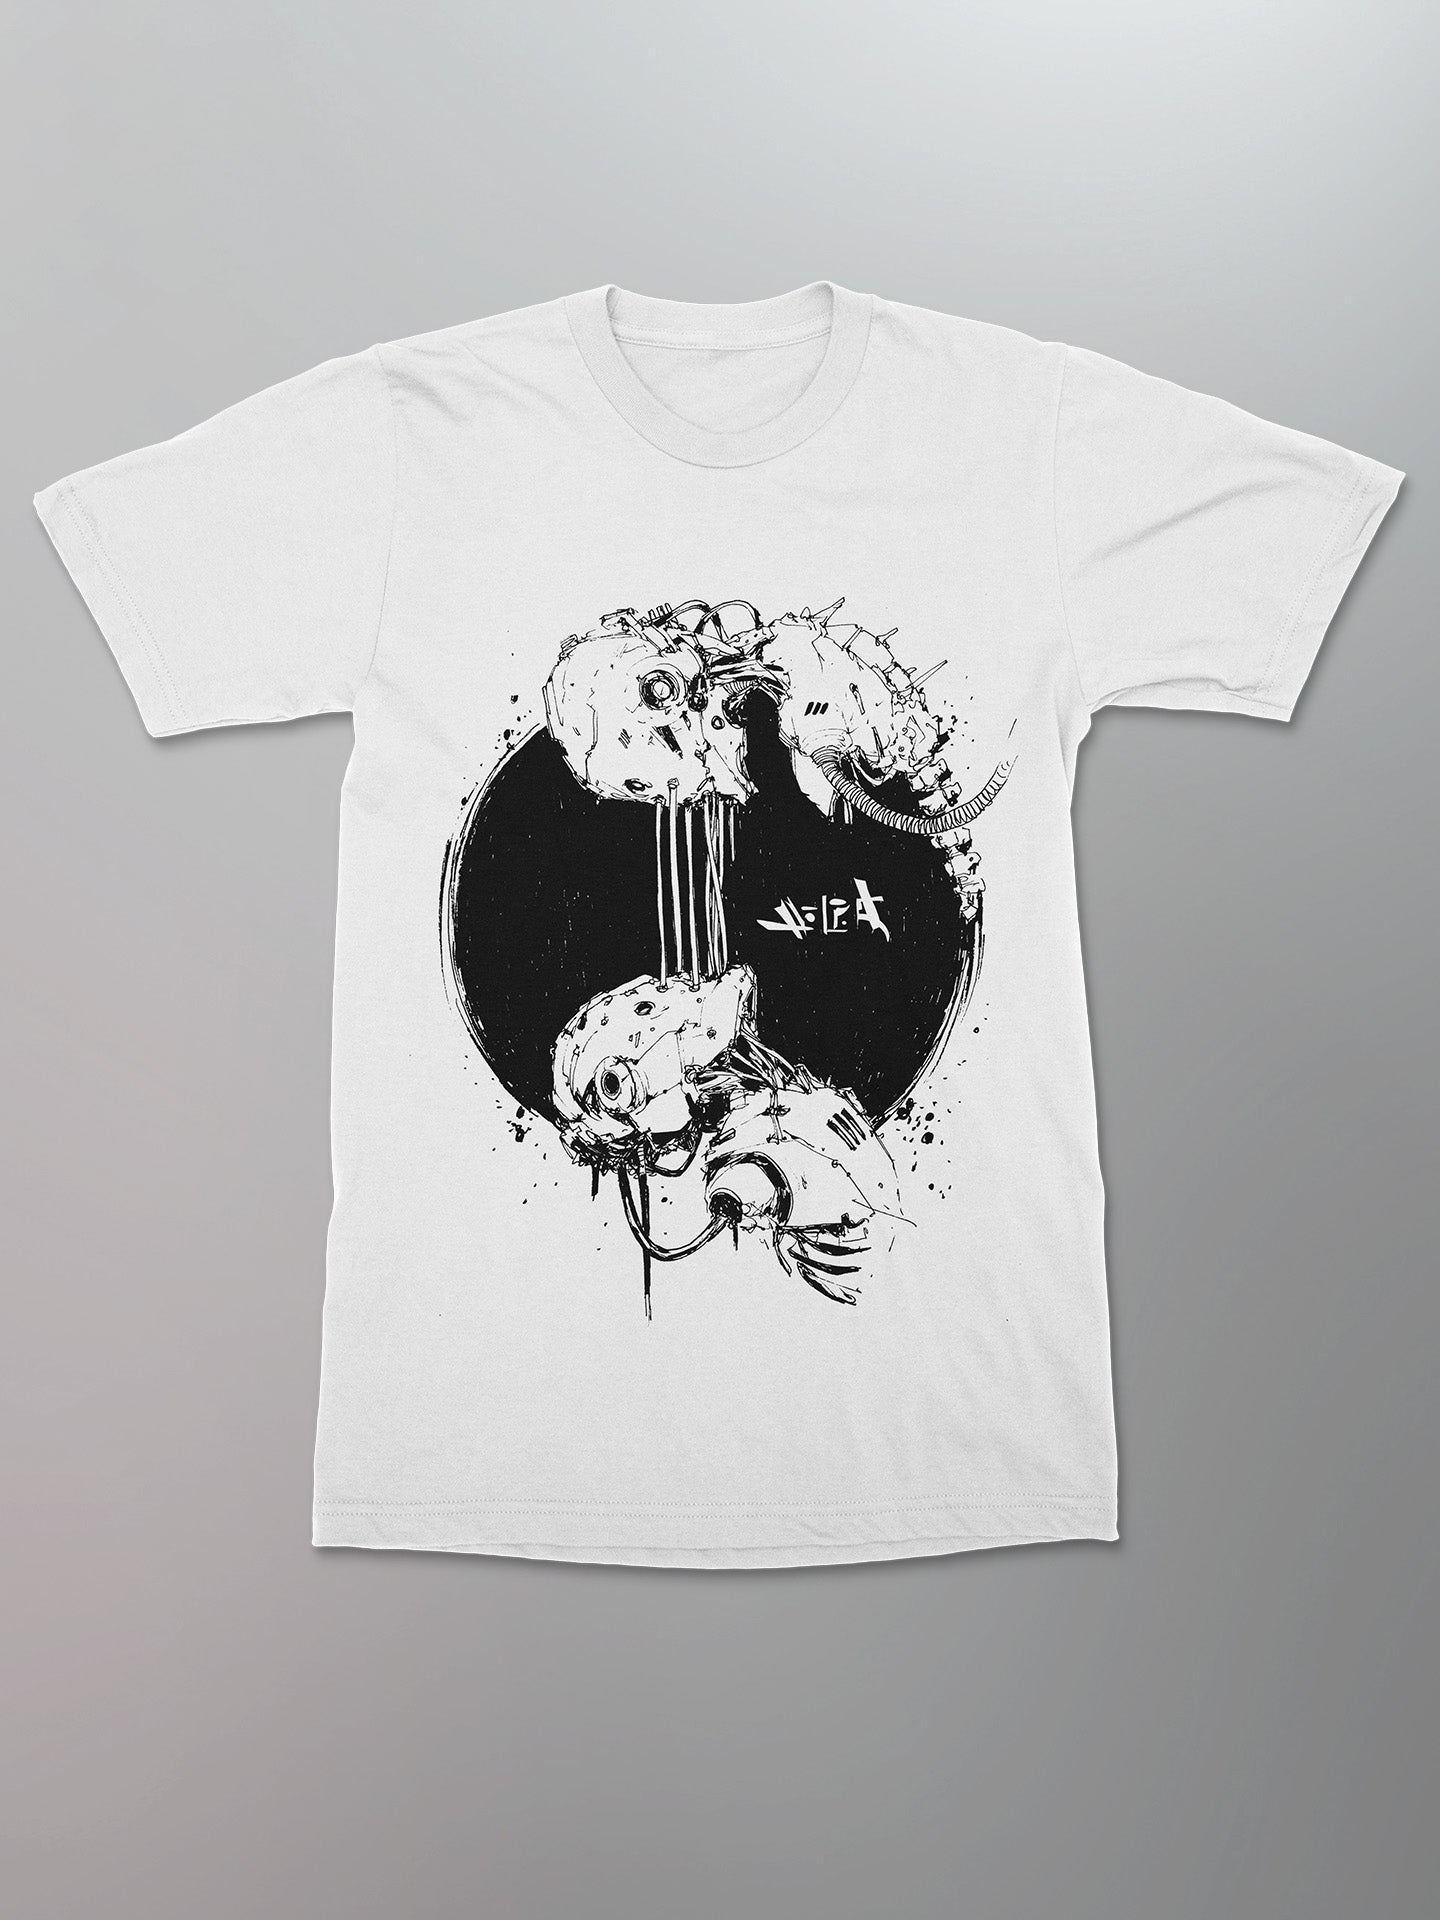 Ninja Jo - Soulmates Shirt [White]